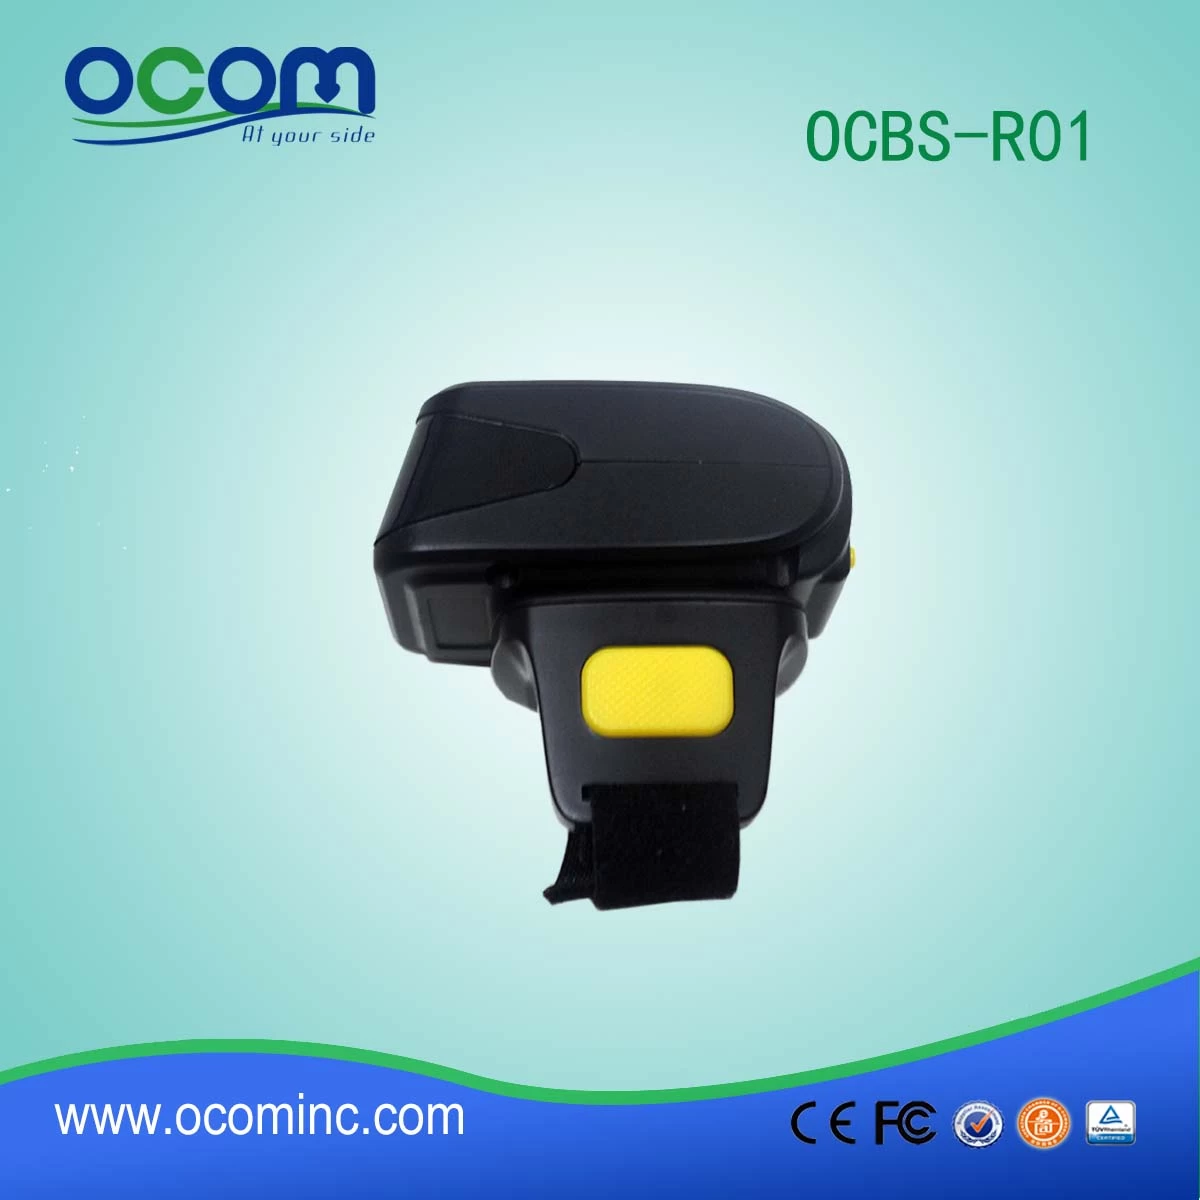 OCBS-R01 1d pocket wireless bluetooth barcode reader